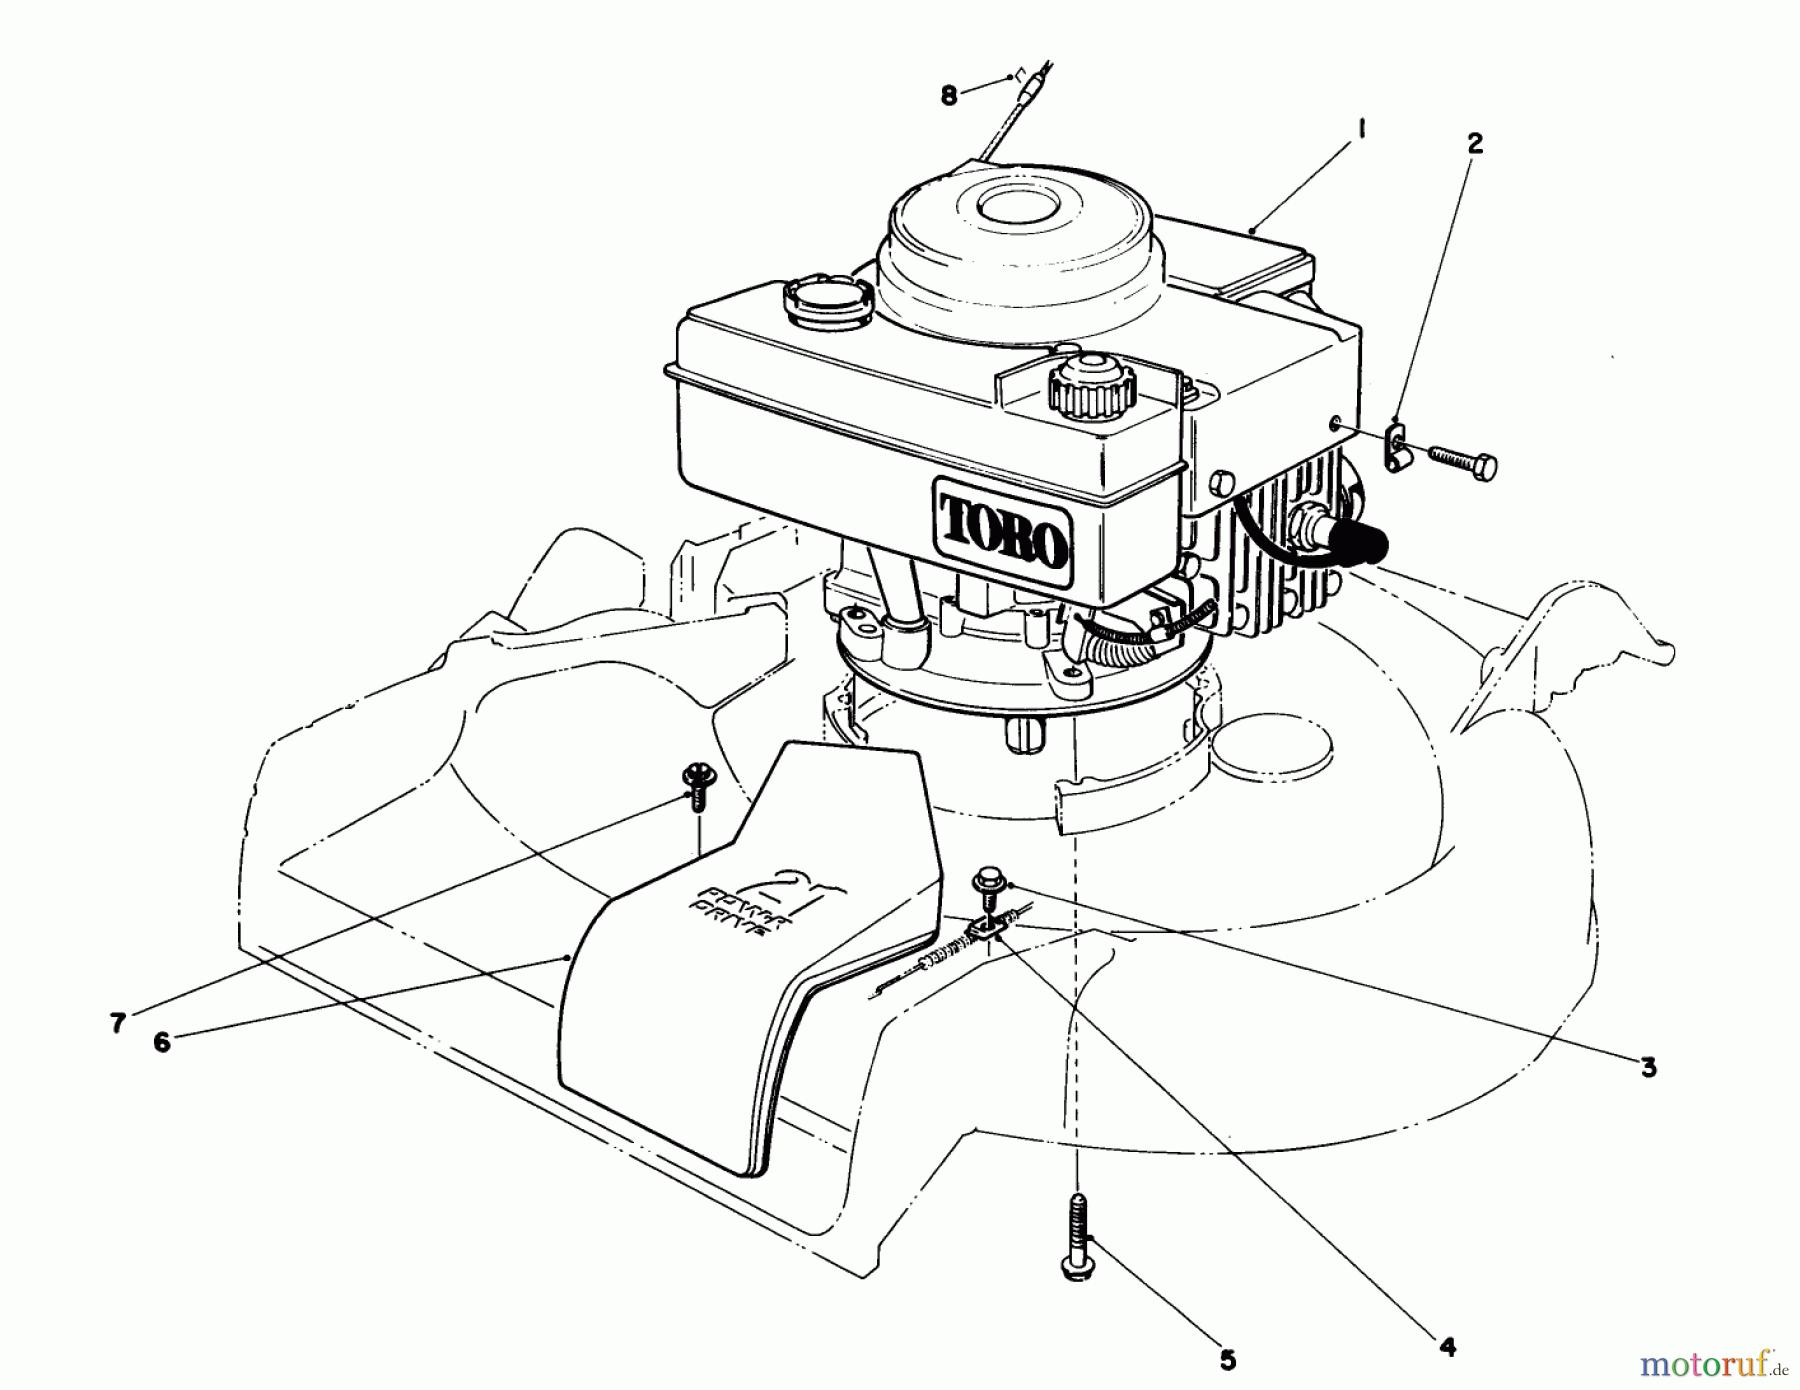  Toro Neu Mowers, Walk-Behind Seite 1 16775 - Toro Lawnmower, 1988 (8000001-8022965) ENGINE ASSEMBLY